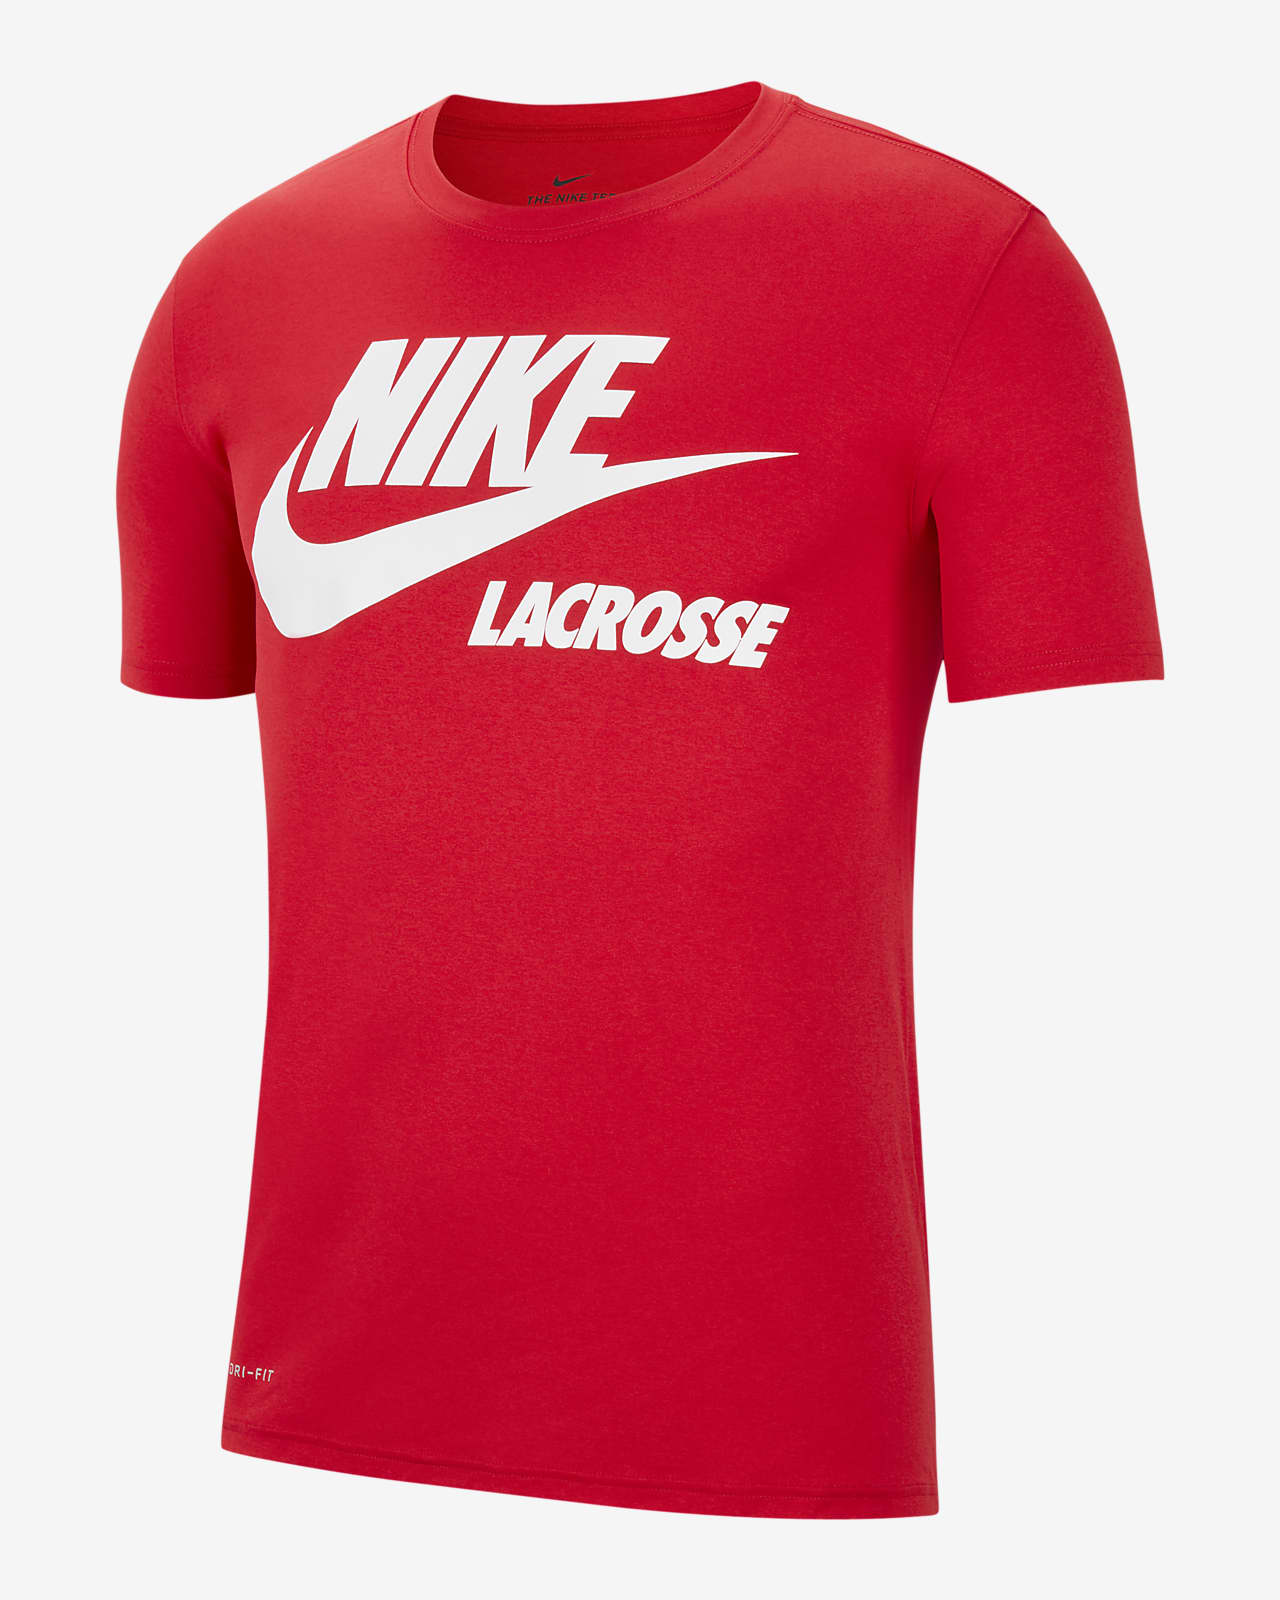 Nike Dri-FIT Men's Lacrosse T-Shirt. Nike.com